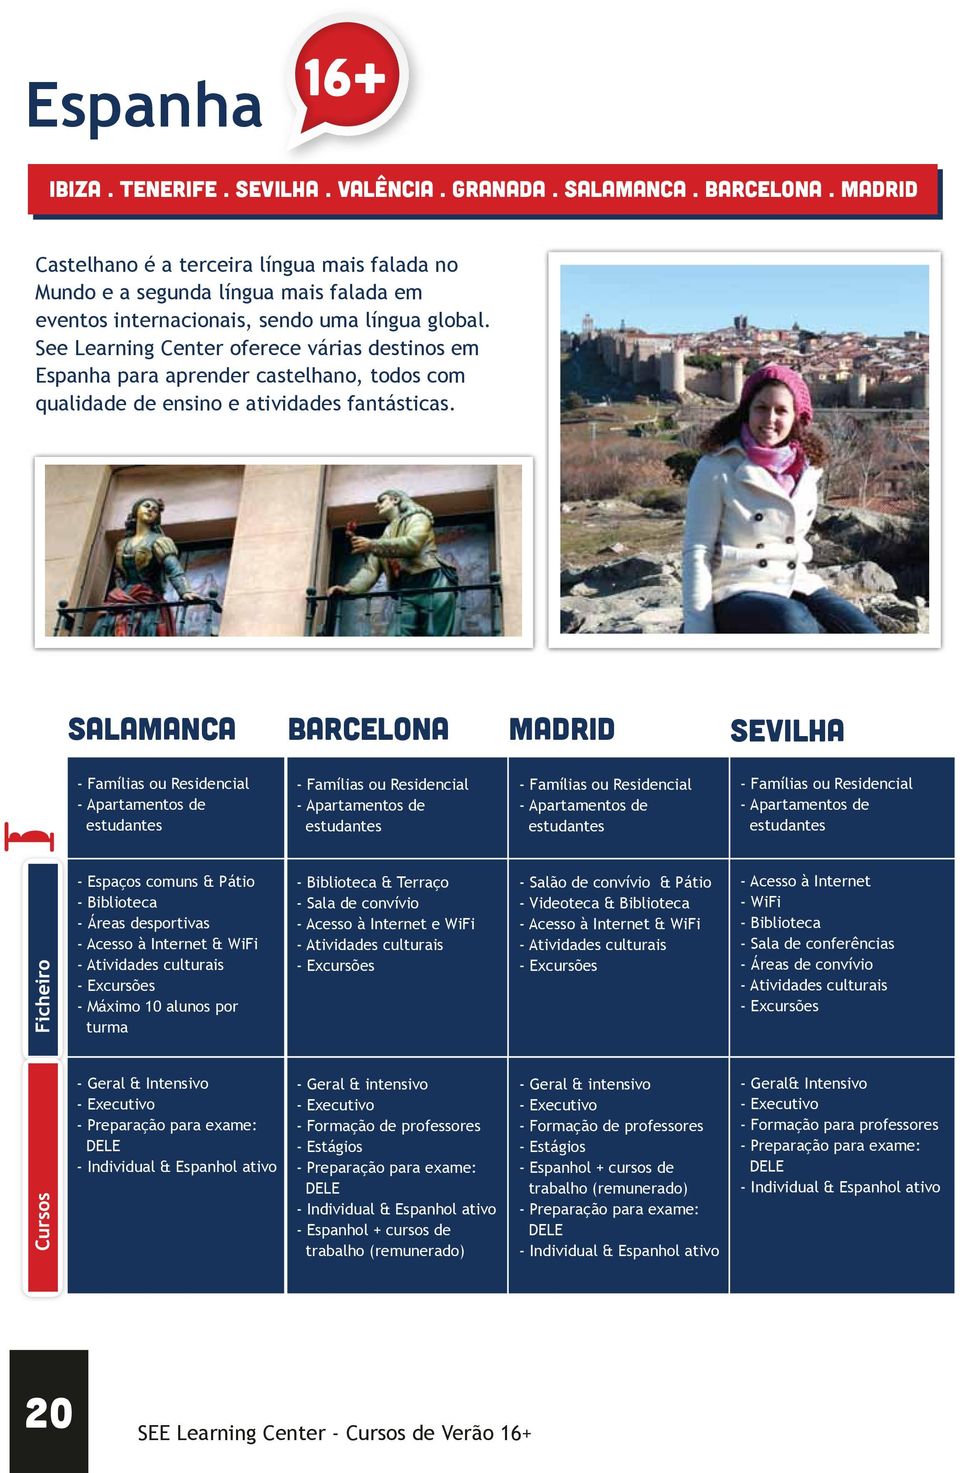 See Learning Center oferece várias destinos em Espanha para aprender castelhano, todos com qualidade de ensino e atividades fantásticas.